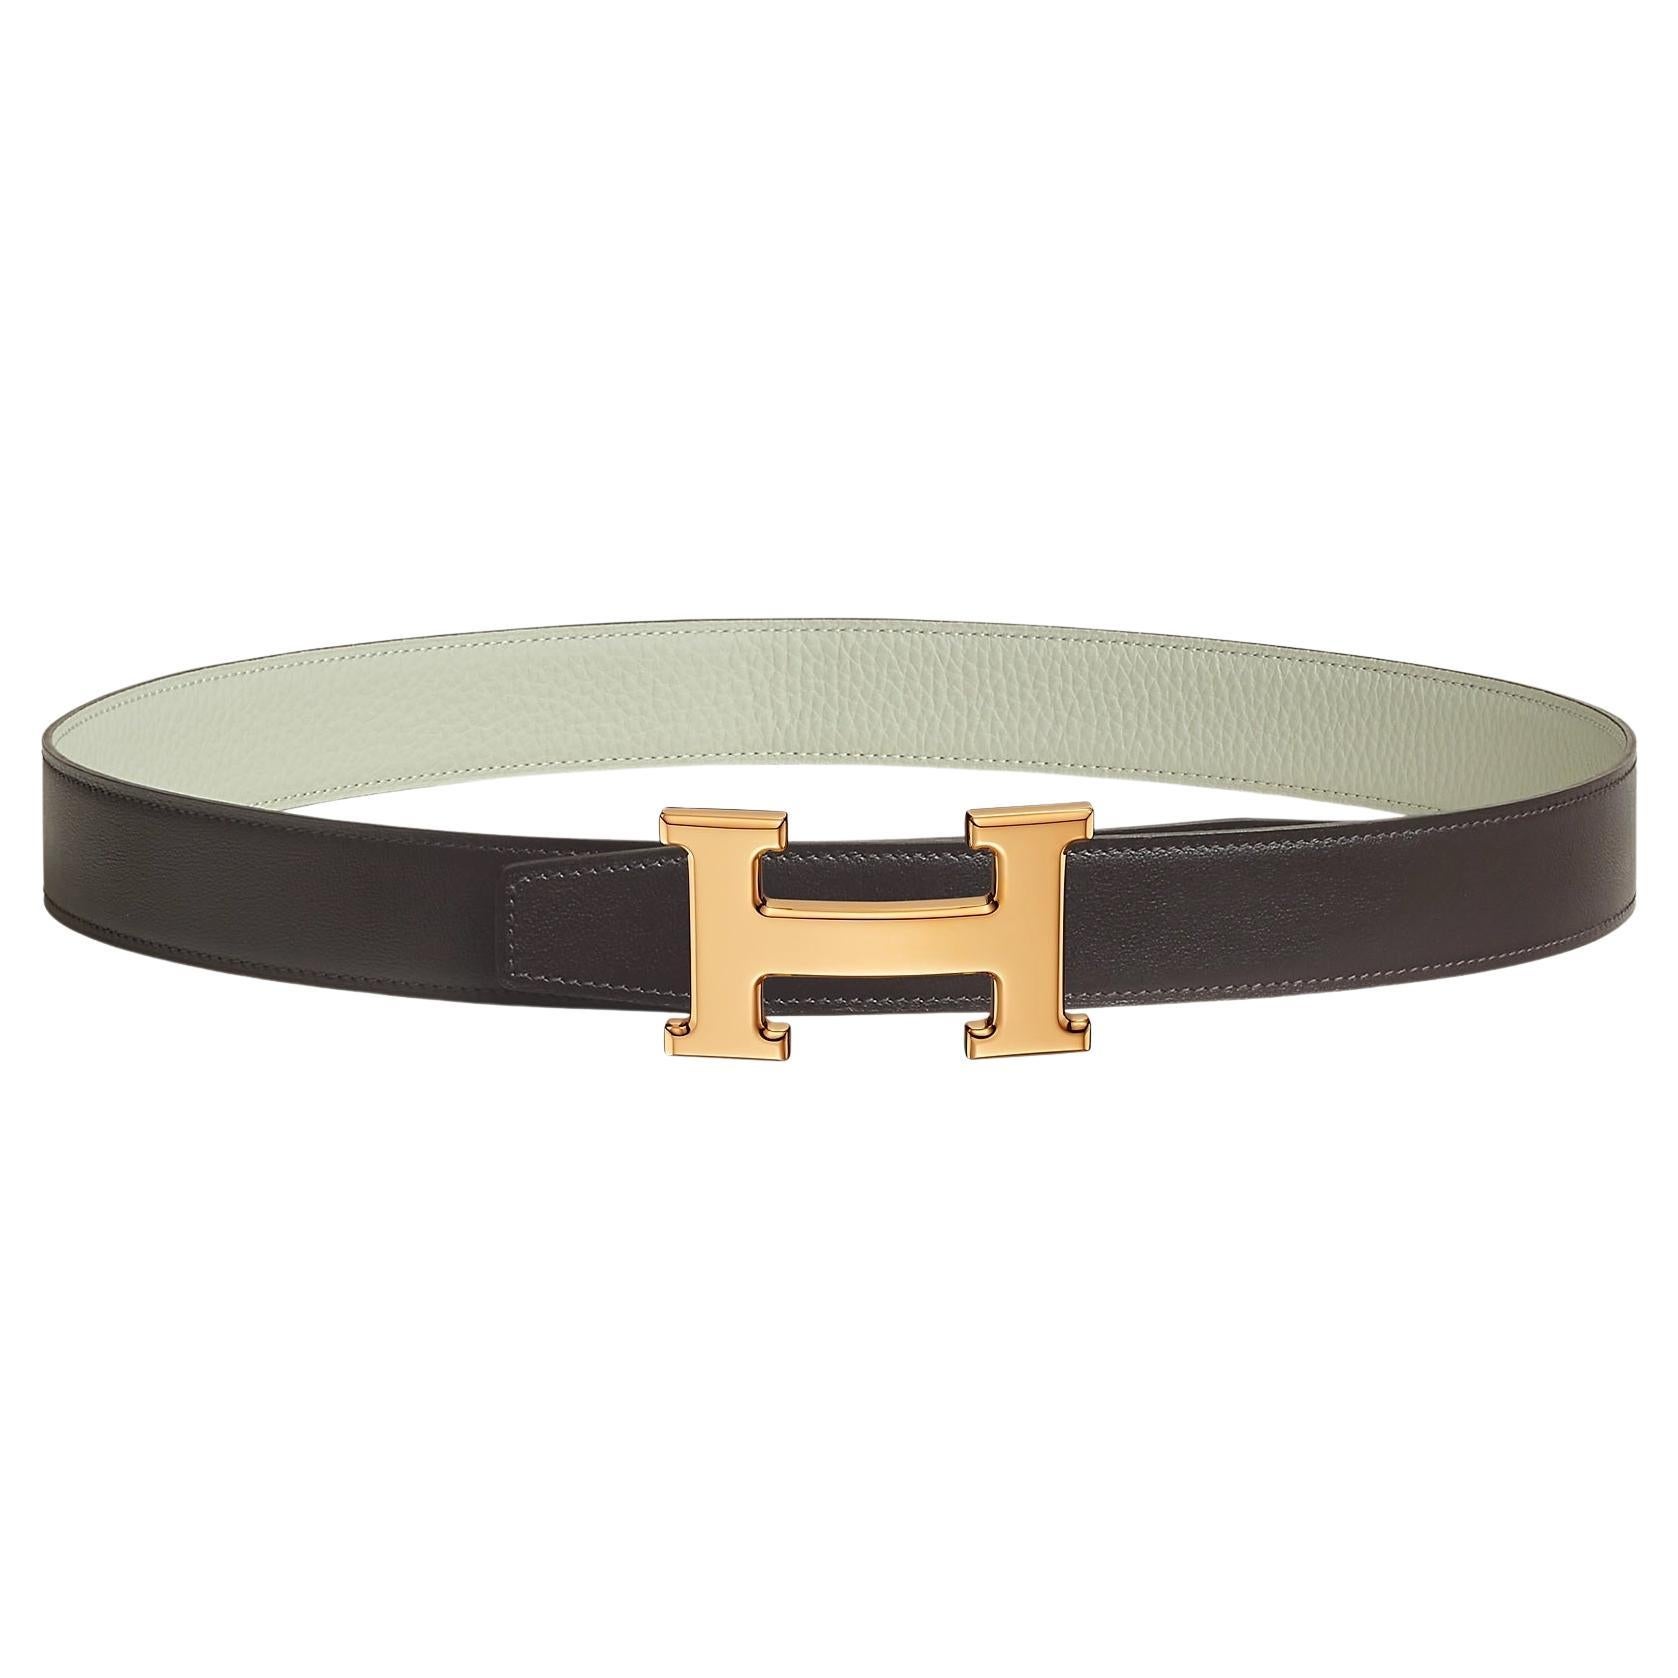 Hermes Ébène / Gris Névé H belt buckle and Reversible leather